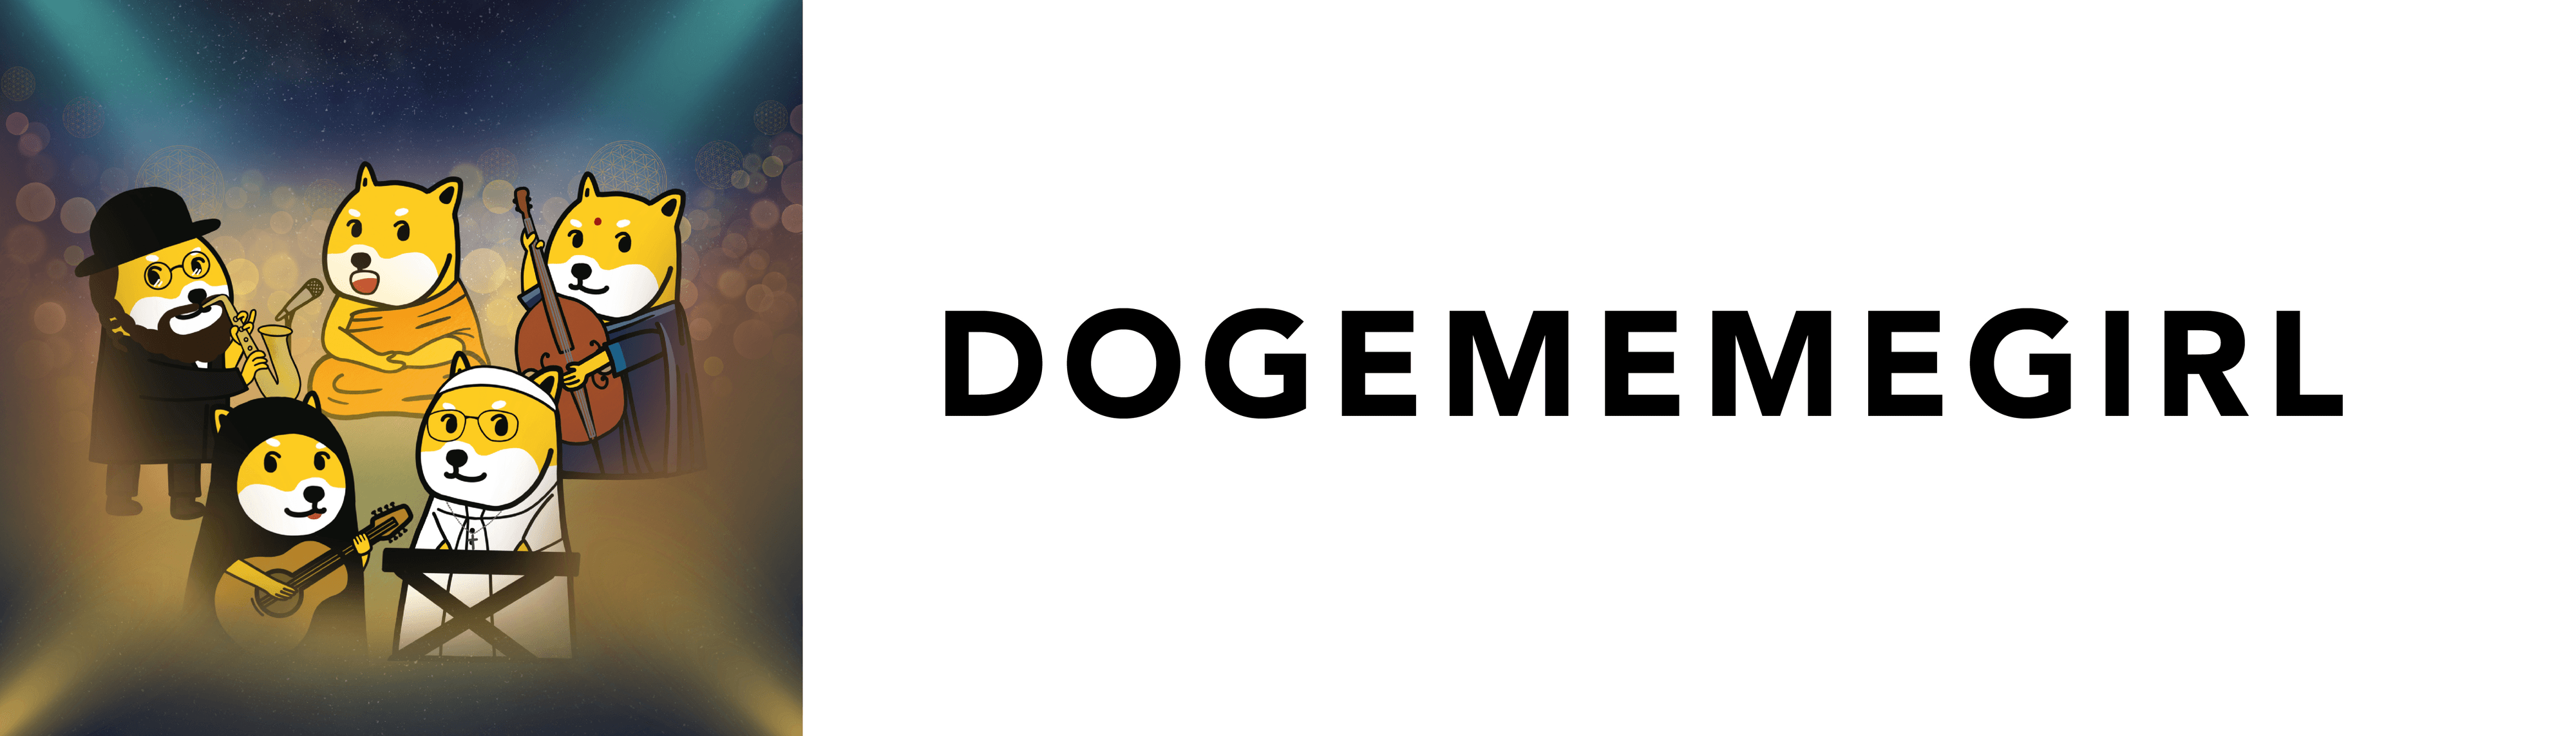 Dogememegirl bannière